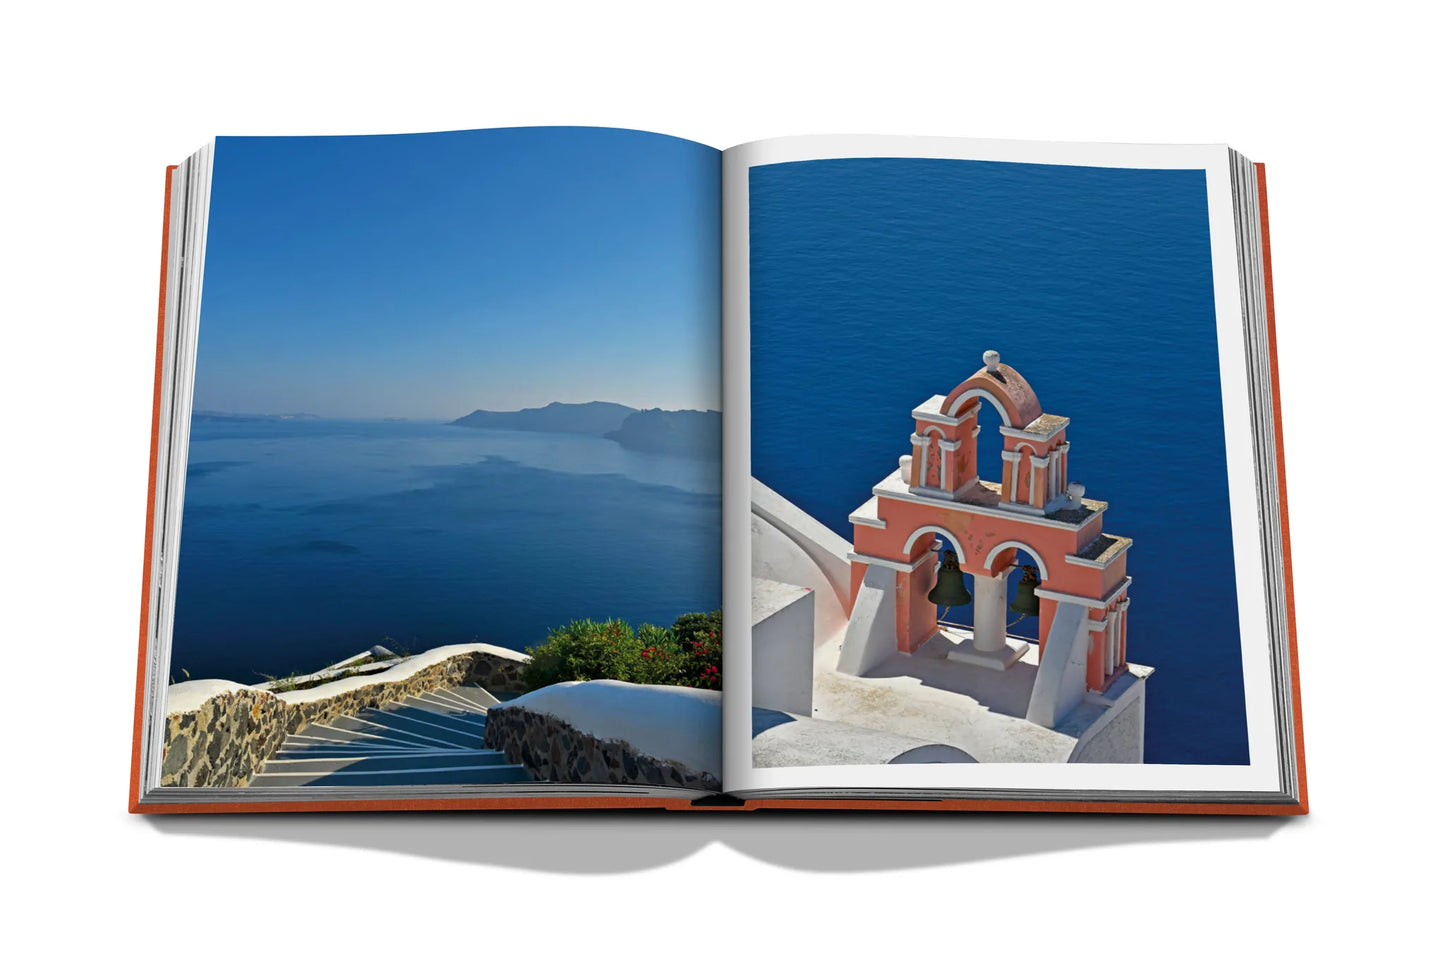 Livre Greek Islands | Assouline